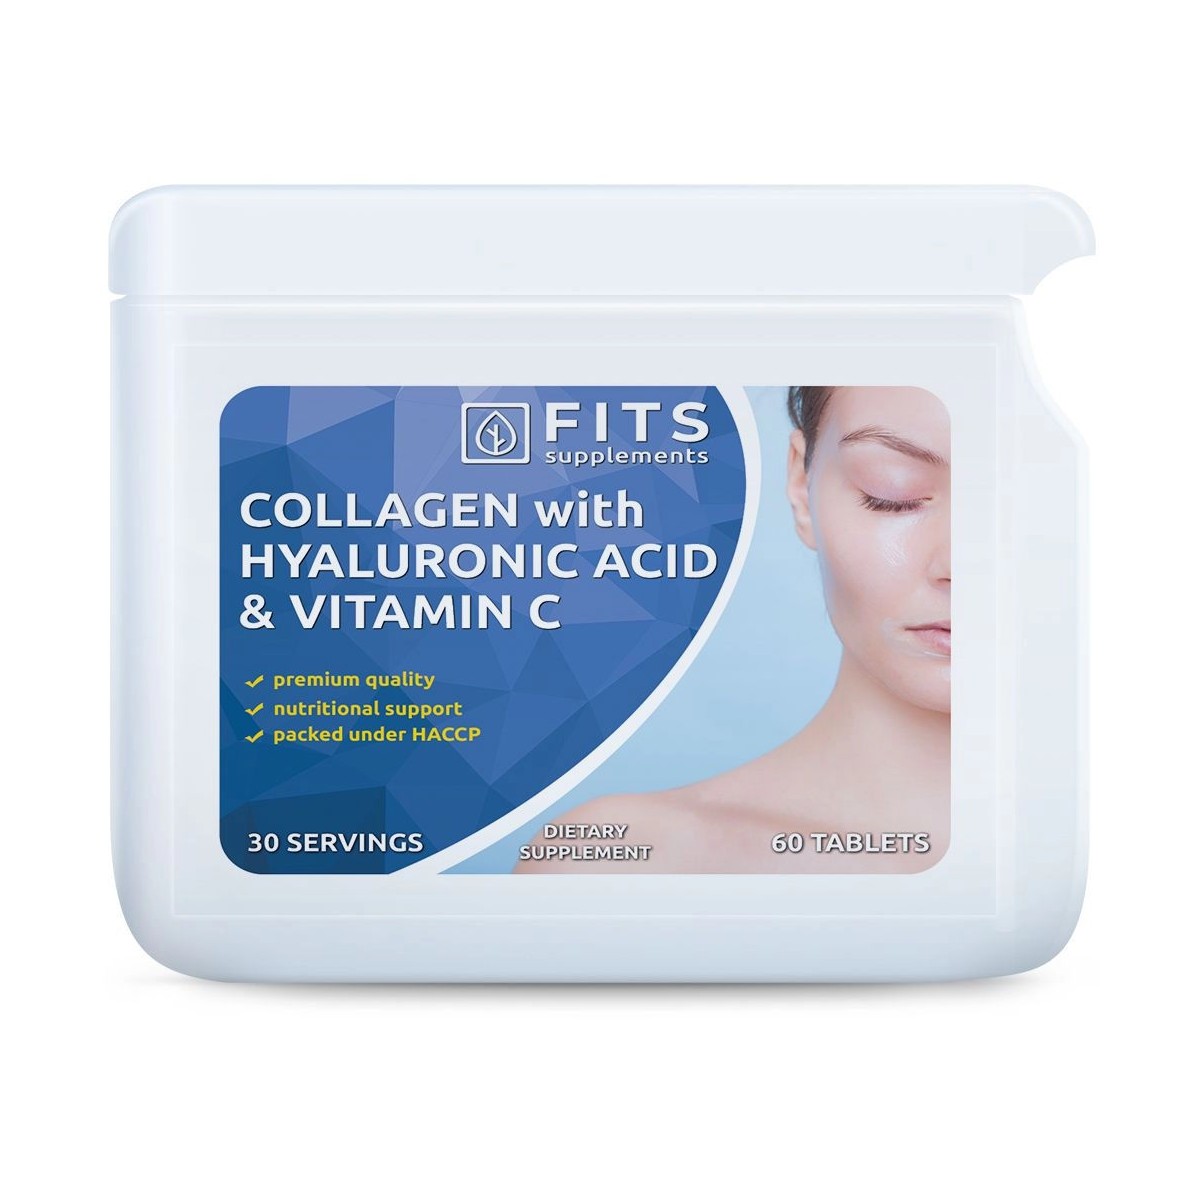 Nutricosmética - Suplementos al mejor precio: Colágeno con Ácido Hialurónico y Vitamina C 60 comprimidos de FITS Supplements en Skin Thinks - Tratamiento Anti-Edad